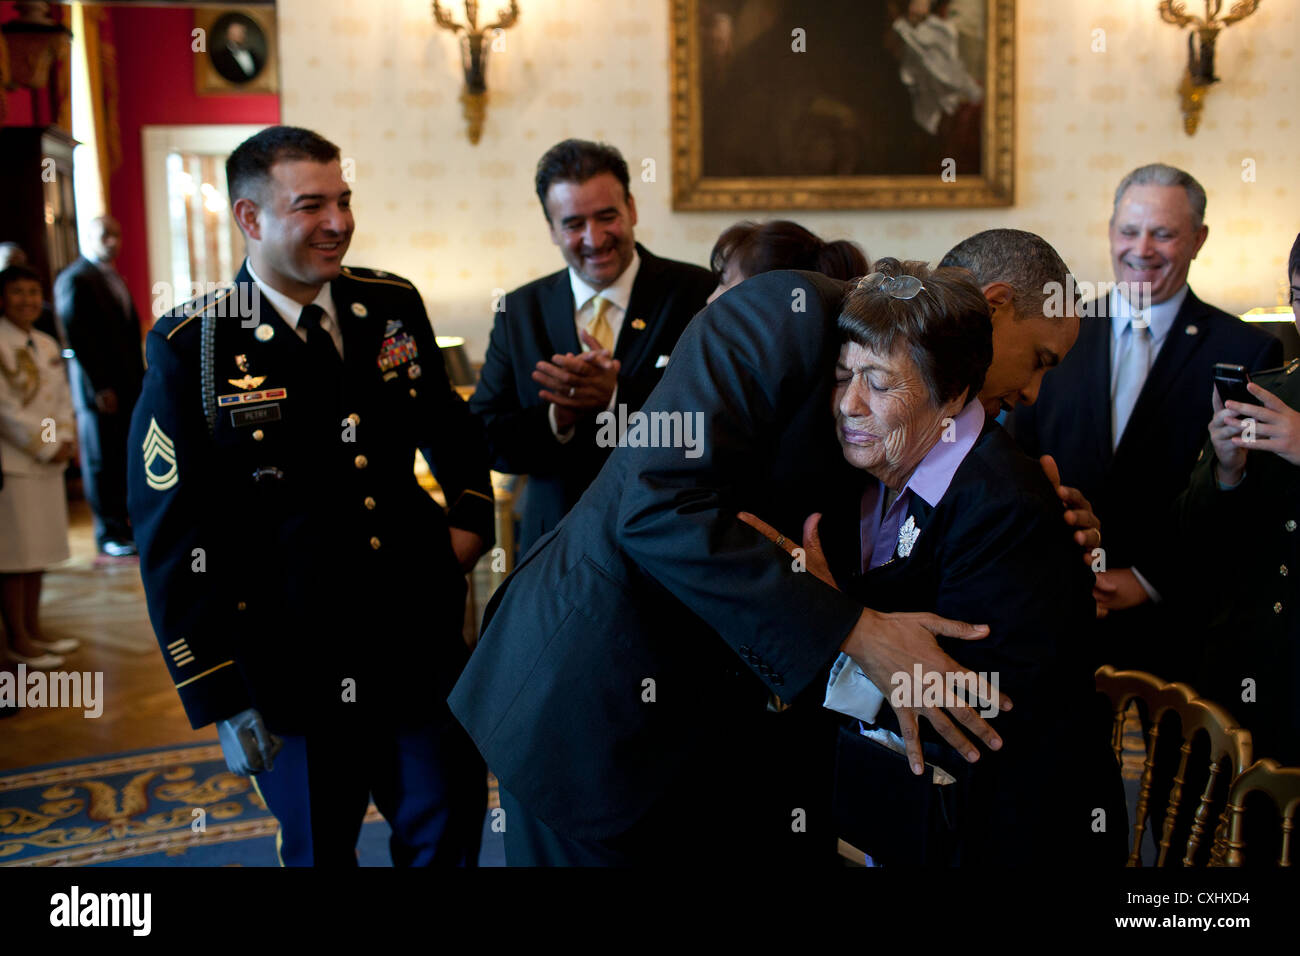 Le président américain Barack Obama épouse Bertha Petry, la grand-mère de l'US Army Sergent Leroy Petry 12 juillet 2011 dans la salle bleue de la Maison Blanche. Plus tard, le Président a accordé la SFC Petry la médaille d'honneur pour ses actions courageuses durant des opérations de combat contre un ennemi armé à Paktya, Afghanistan, en mai 2008. Banque D'Images